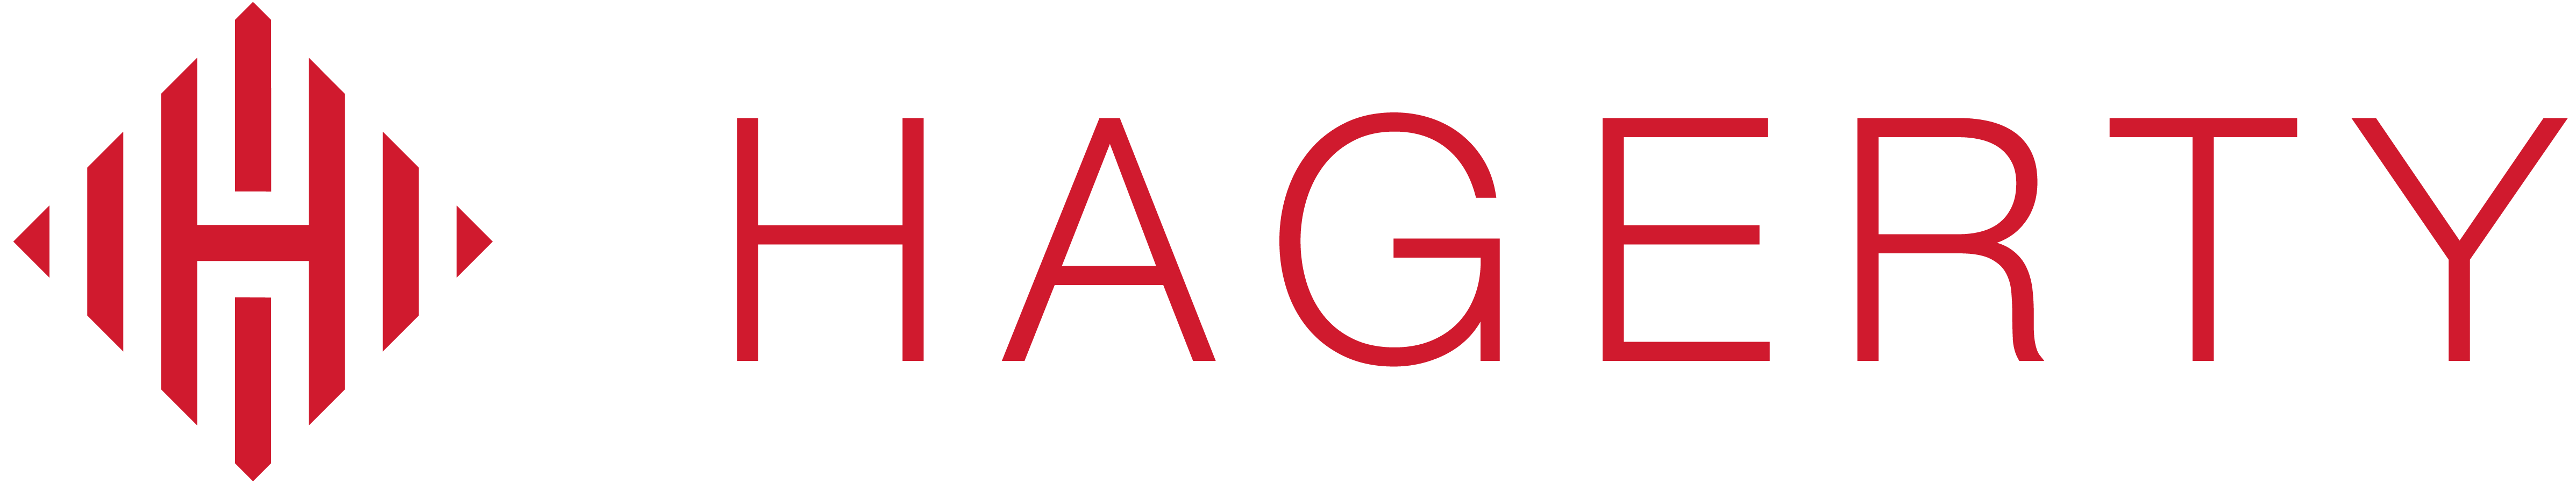 Hagerty Logo - hagerty logo - long (9) - SECOORA